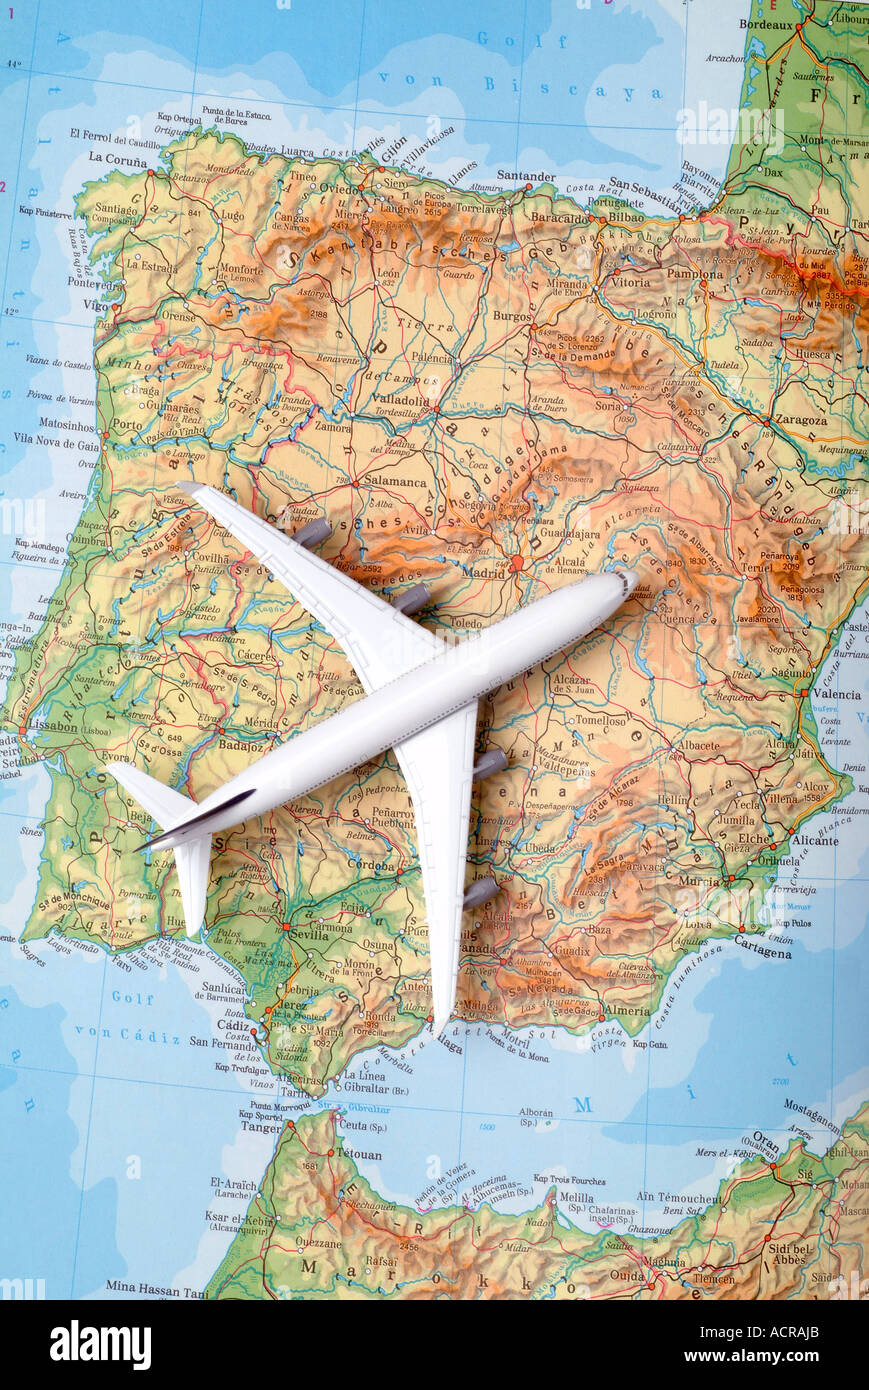 airplane on a map of spain Flugzeug auf einer Karte von Spanien Stock Photo